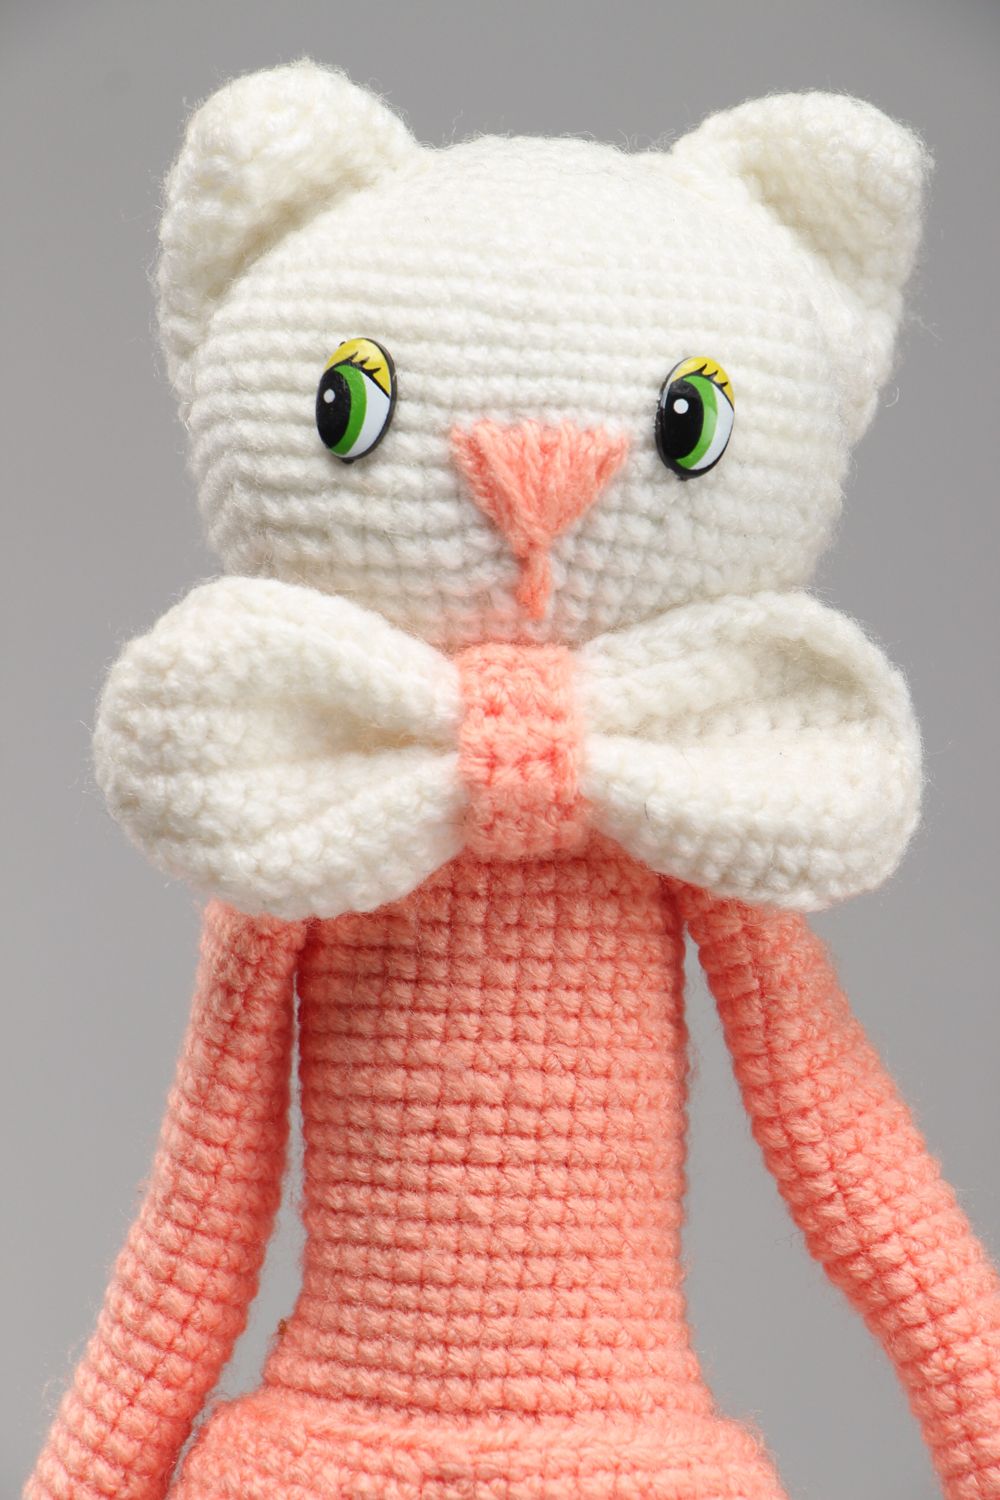 Jouet mou tricoté au crochet fait main Chat amigurumi photo 2